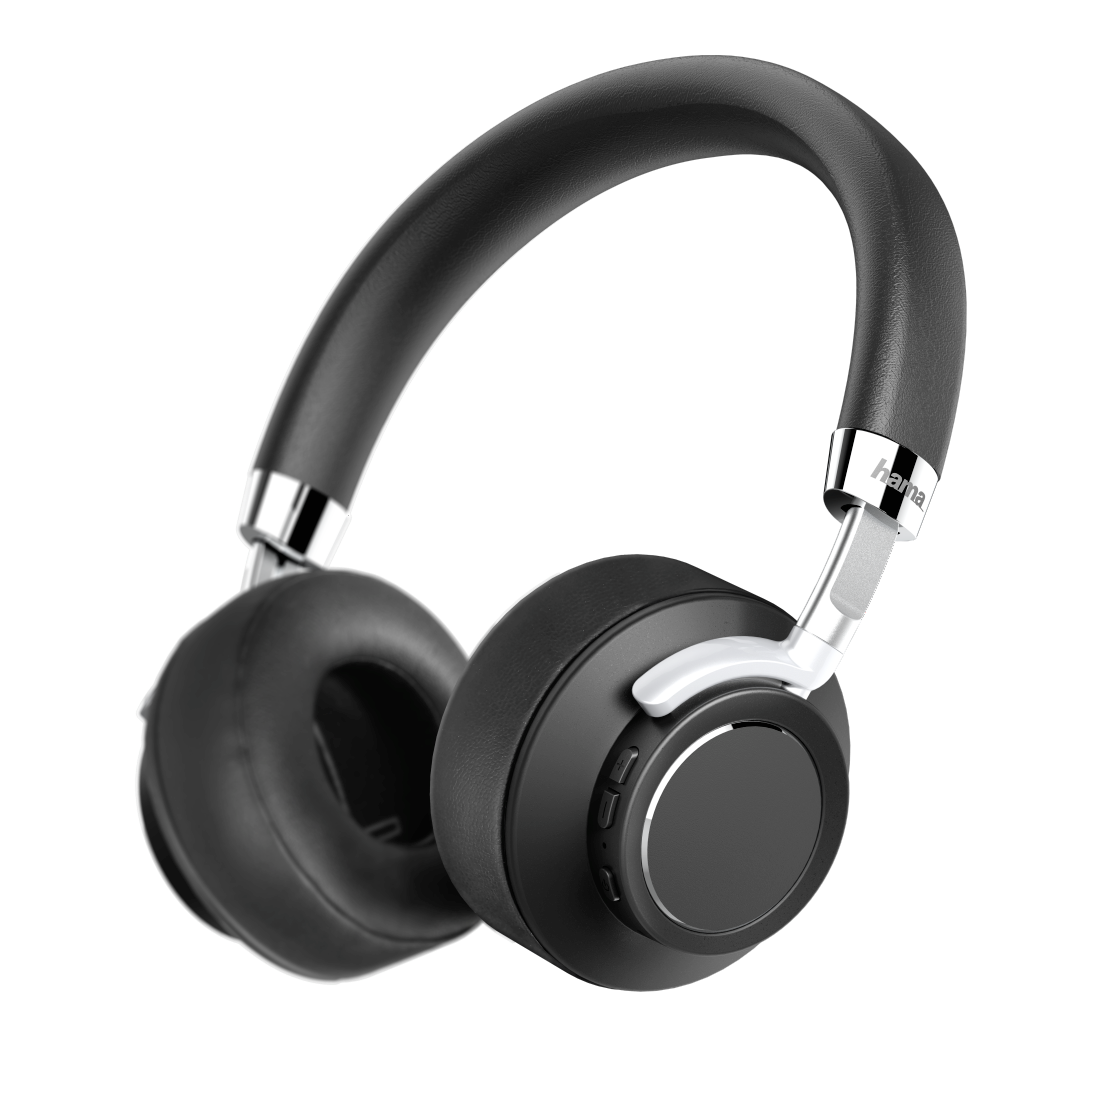 Auriculares Bluetooth® "Voice", supraaurales, micrófono, control por voz |  Hama